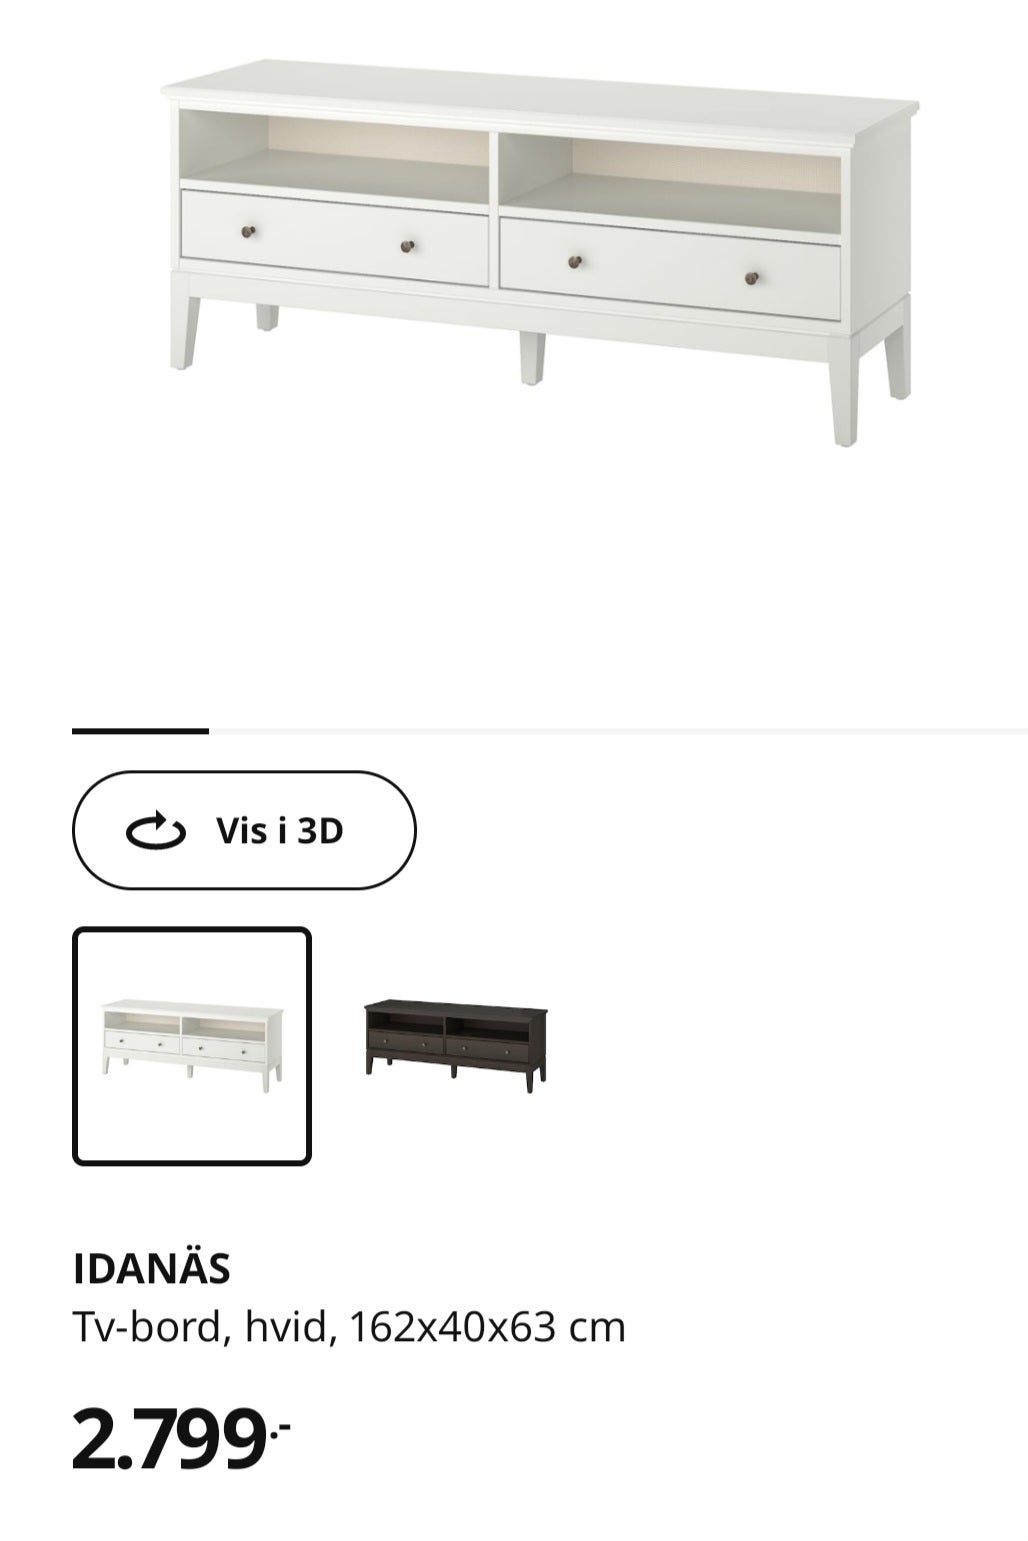 Tv bord fra Ikea - IDANÄS